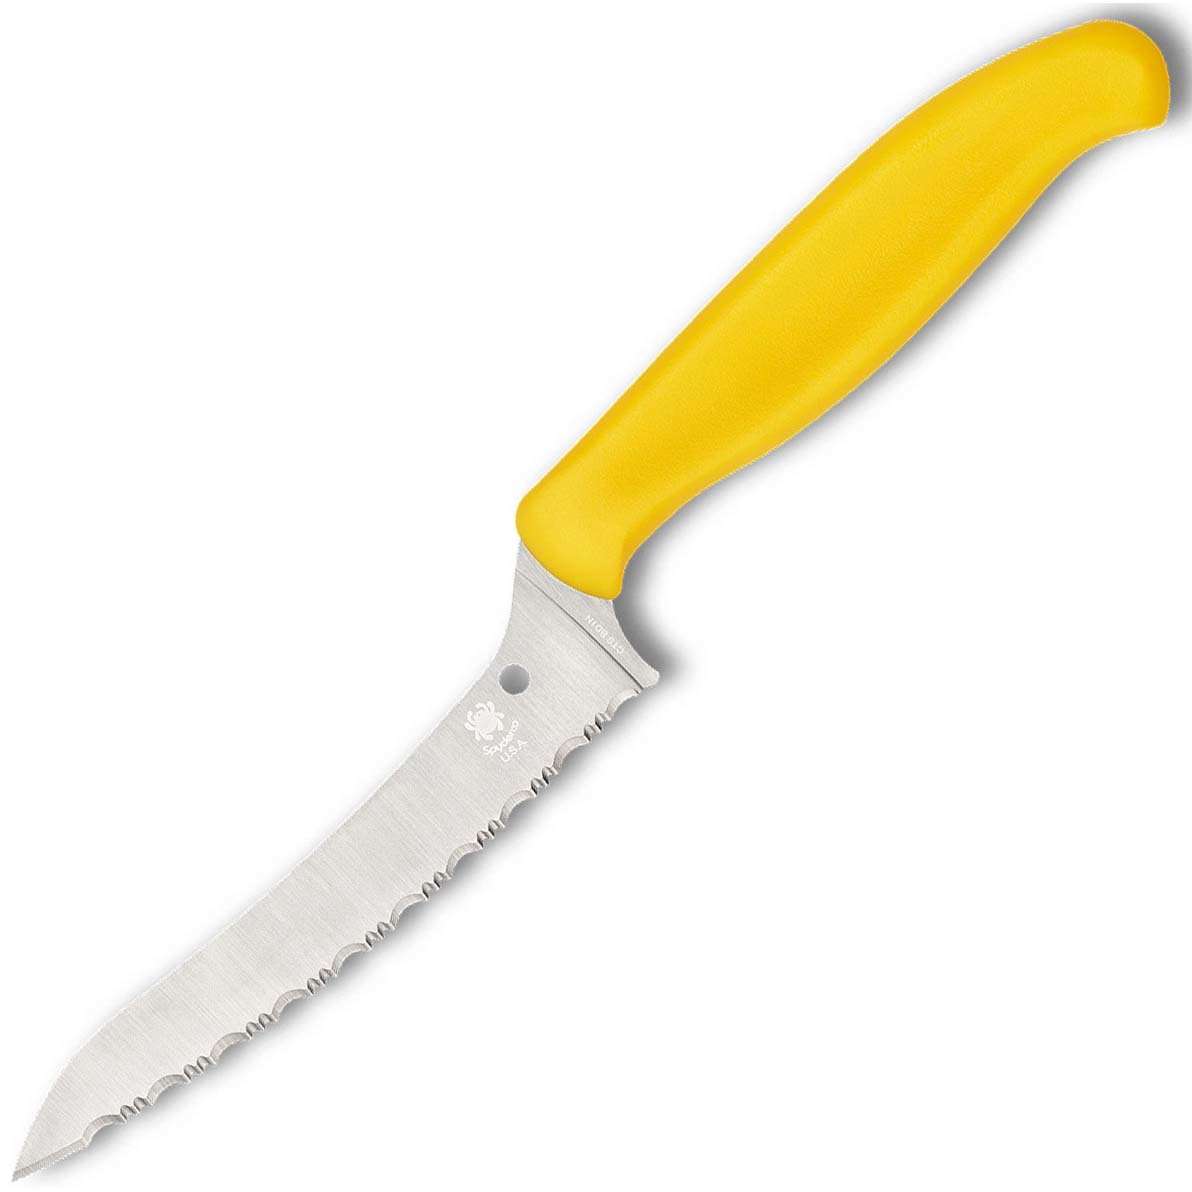 Универсальный кухонный нож Spyderco Z-Cut SpyderEdge Offset Kitchen, сталь CTS - BD1 Alloy, рукоять желтый полипропилен